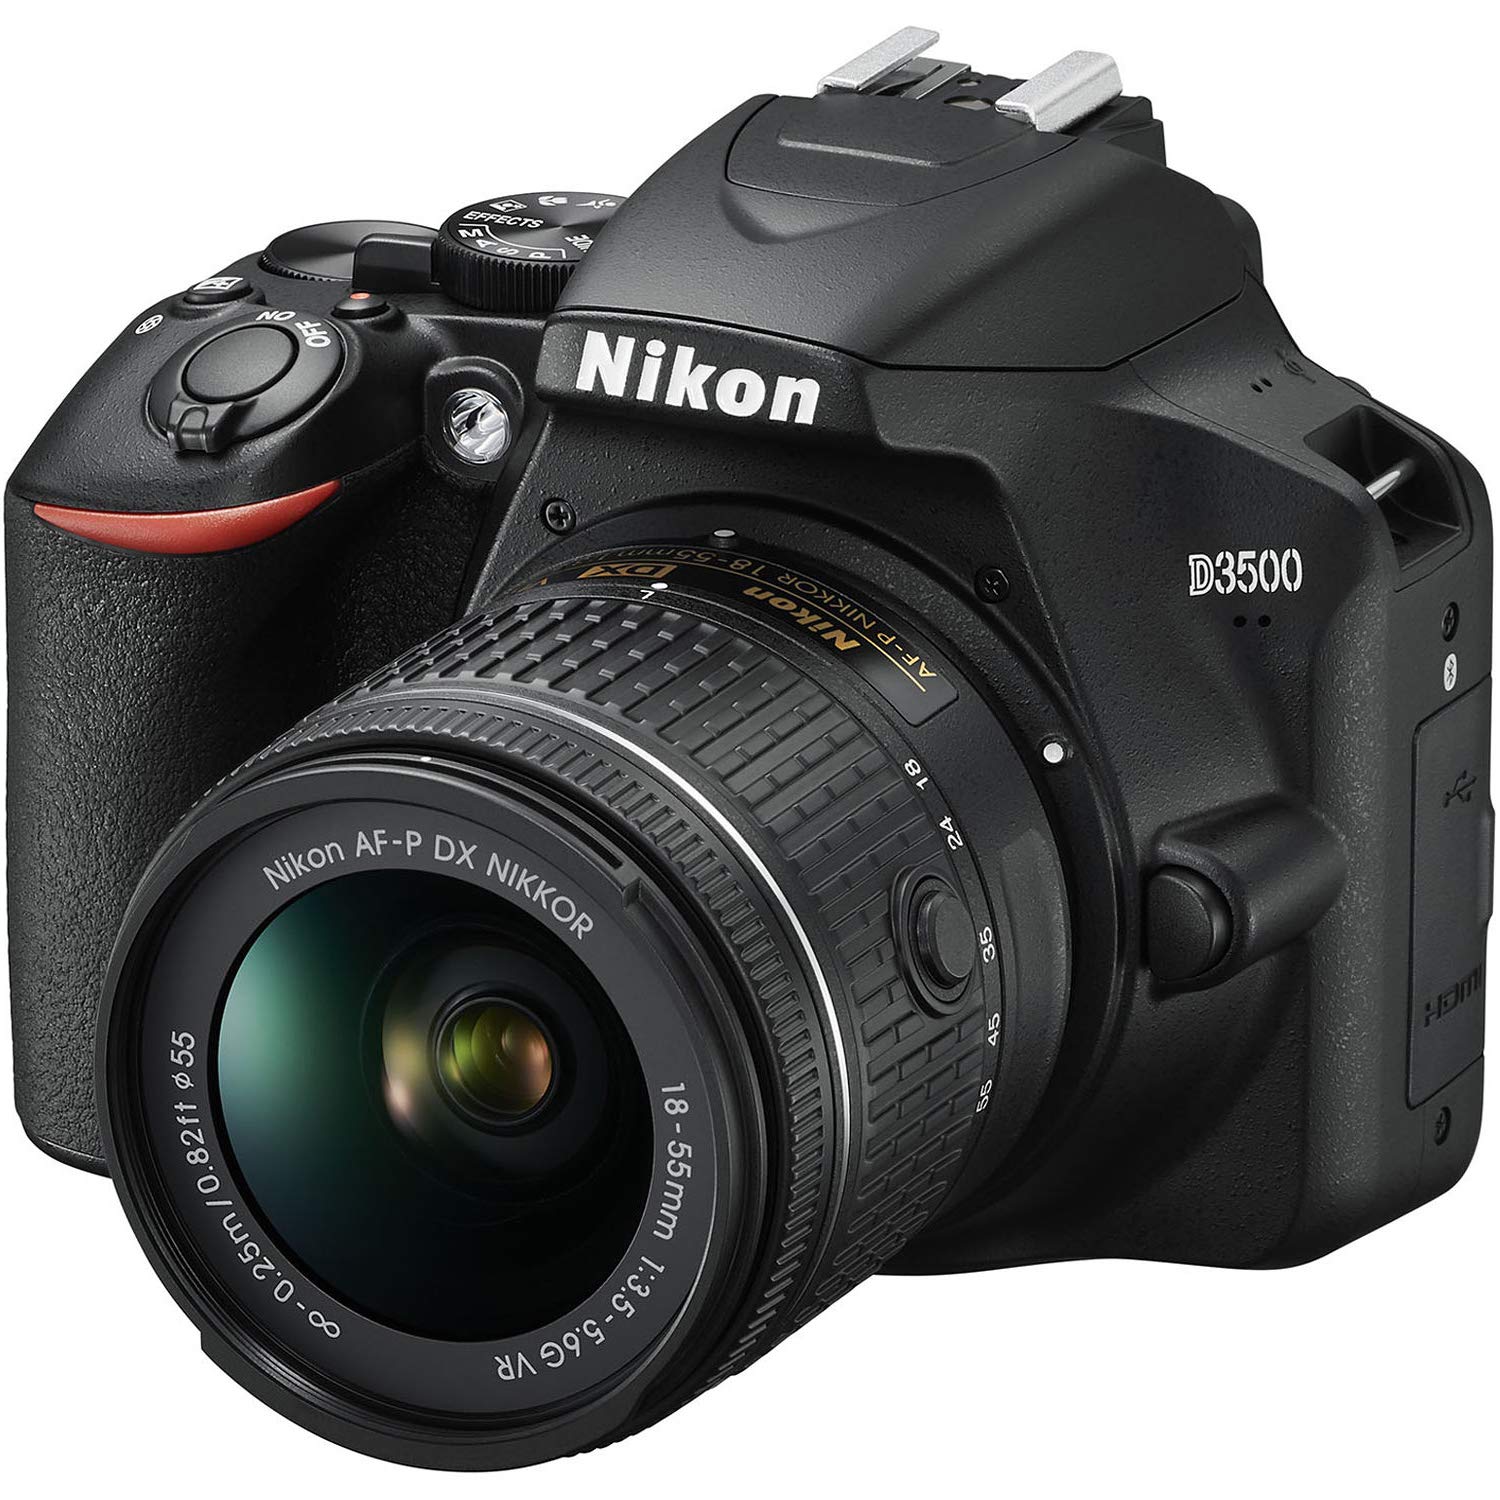 Nikon D3500 Digital SLR Camera & 18-55mm VR DX AF-P Lens with 70-300mm Lens + Case + 16GB Card + Flash + Kit